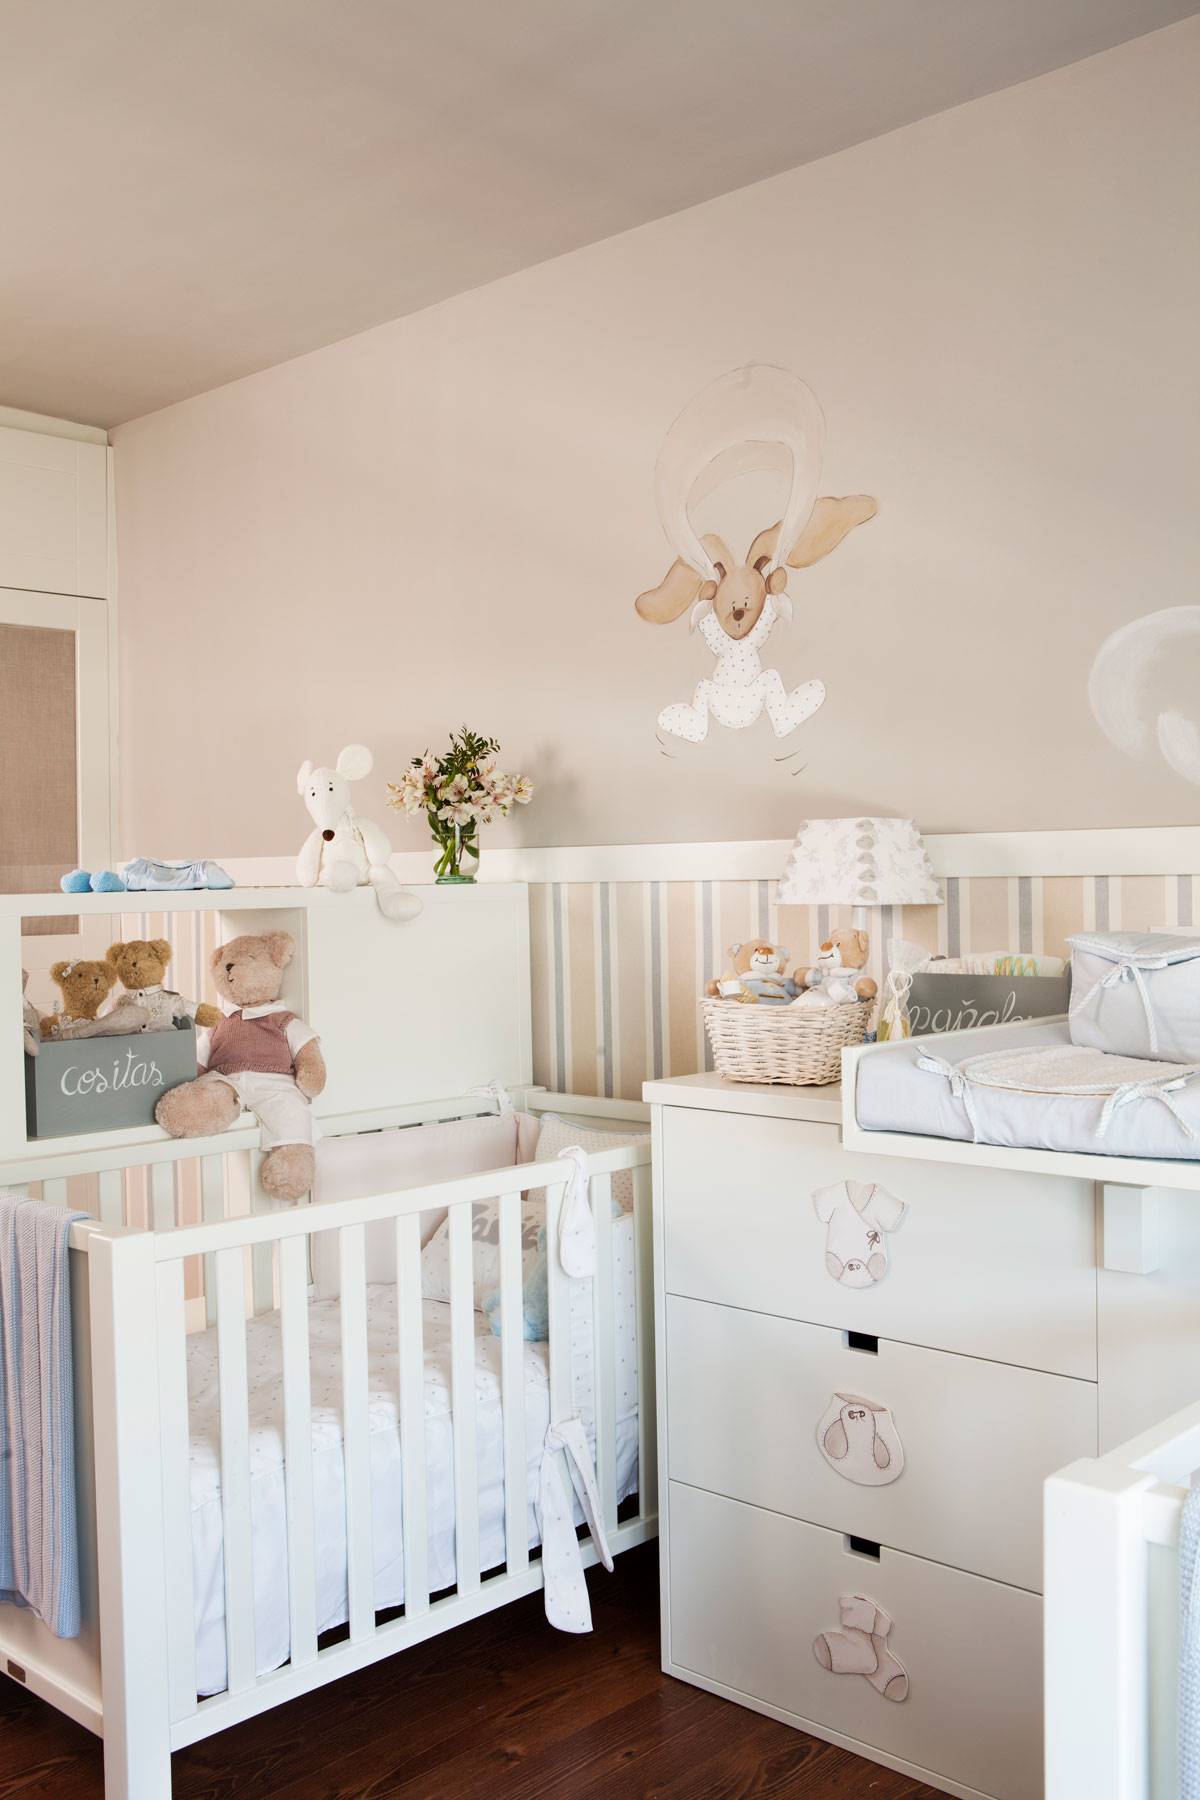 Habitación de bebé con arrimadero, cuna, cambiador y dibujos decorativos en la pared 518582 O